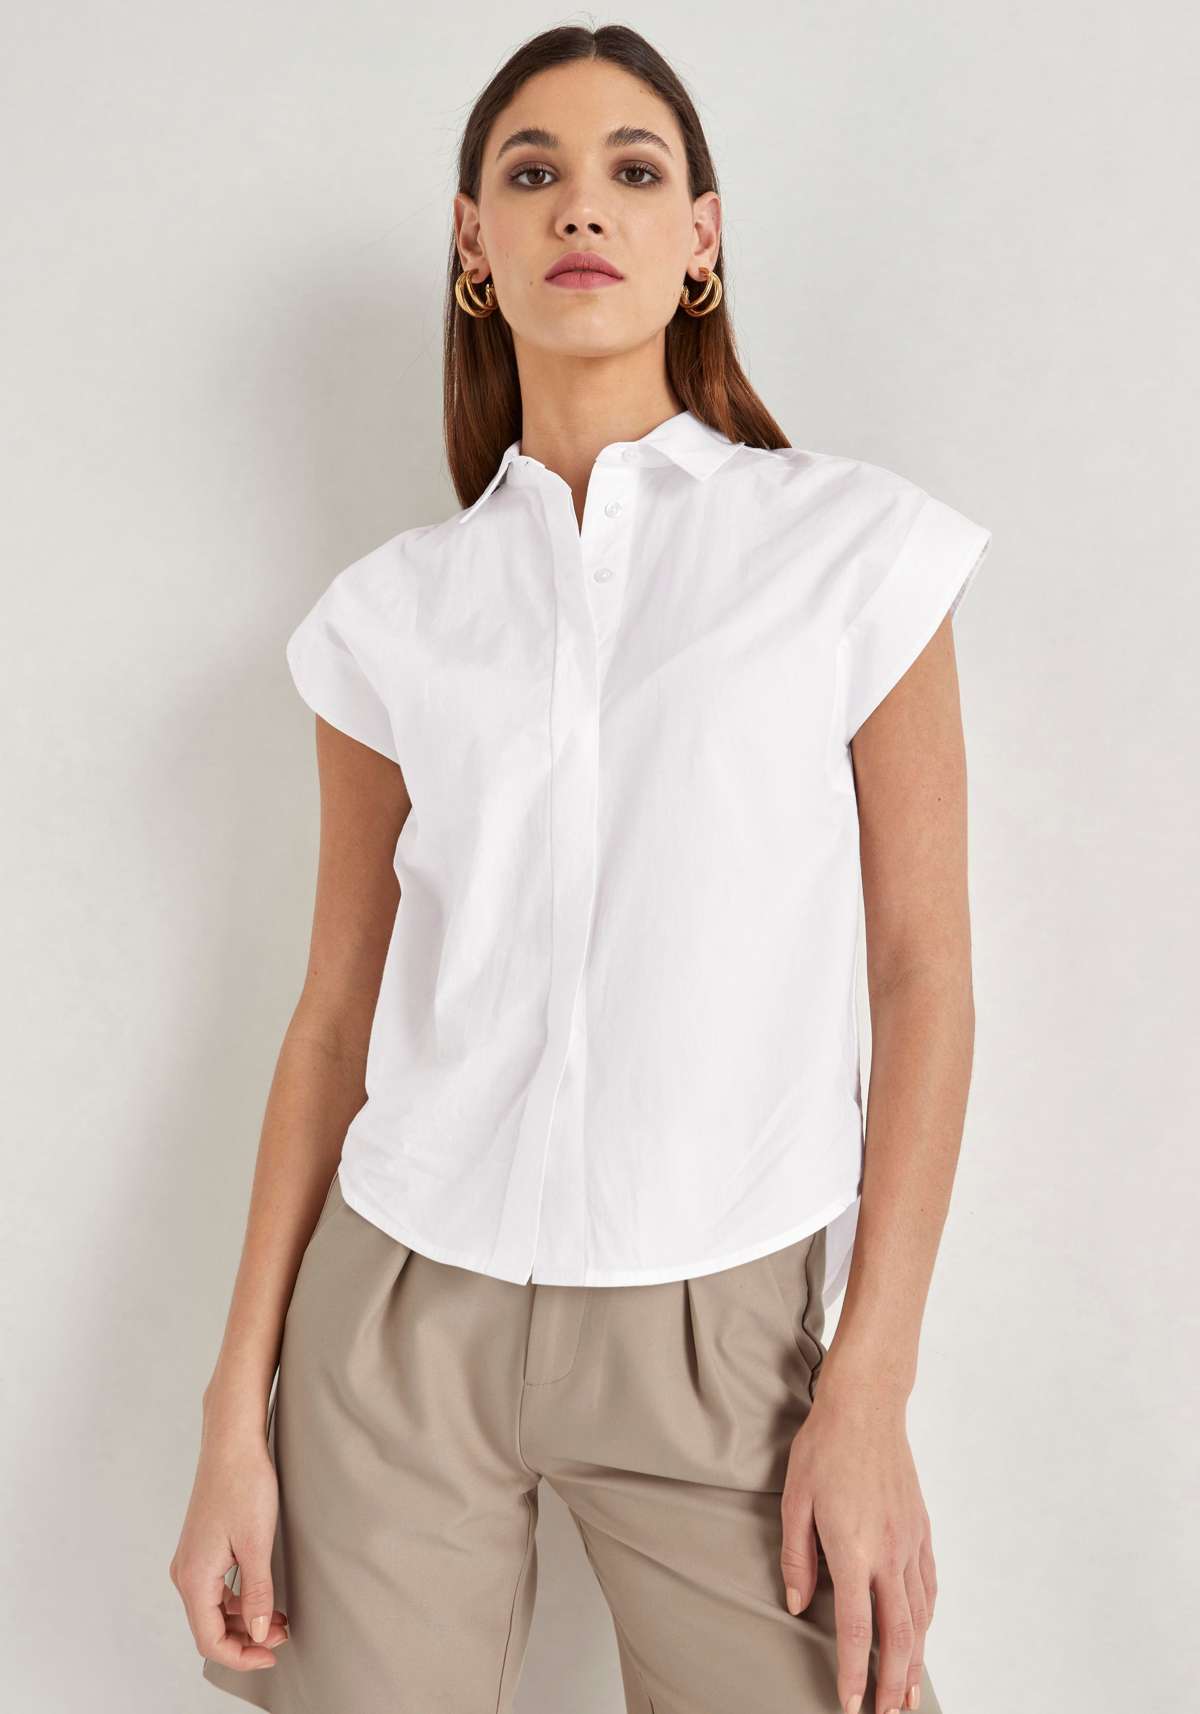 Блузка с короткими рукавами и планкой на пуговицах во всю длину.